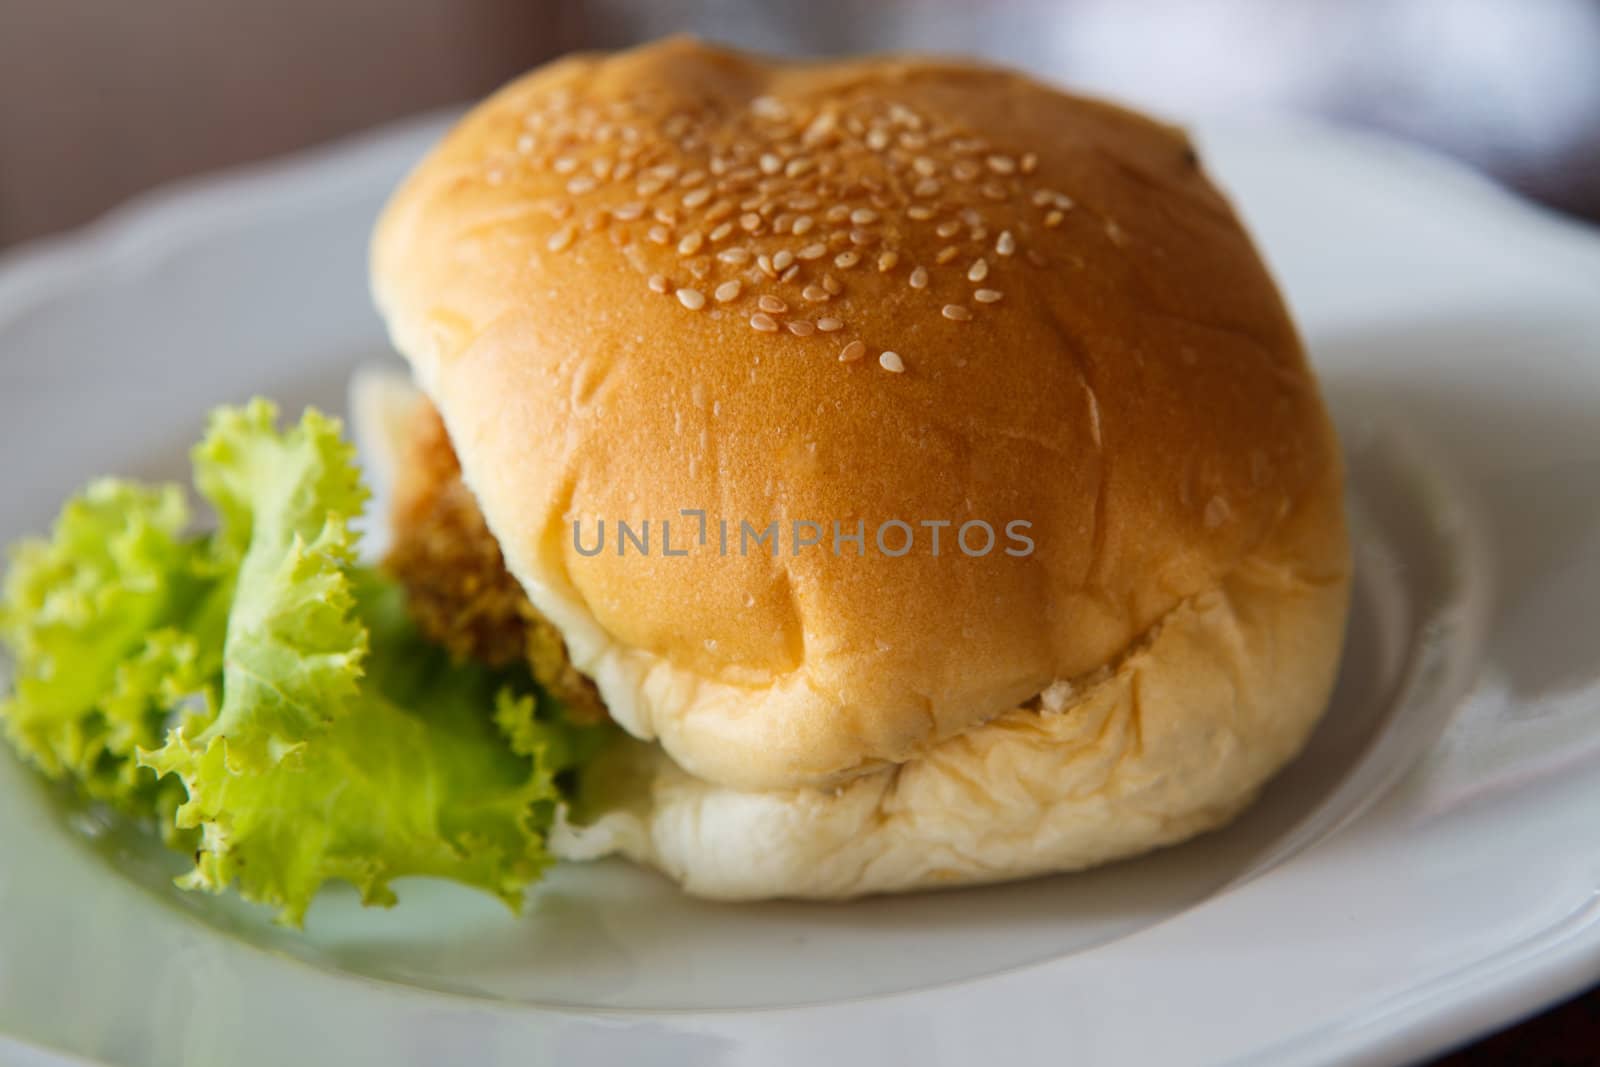 hamburger by thanomphong